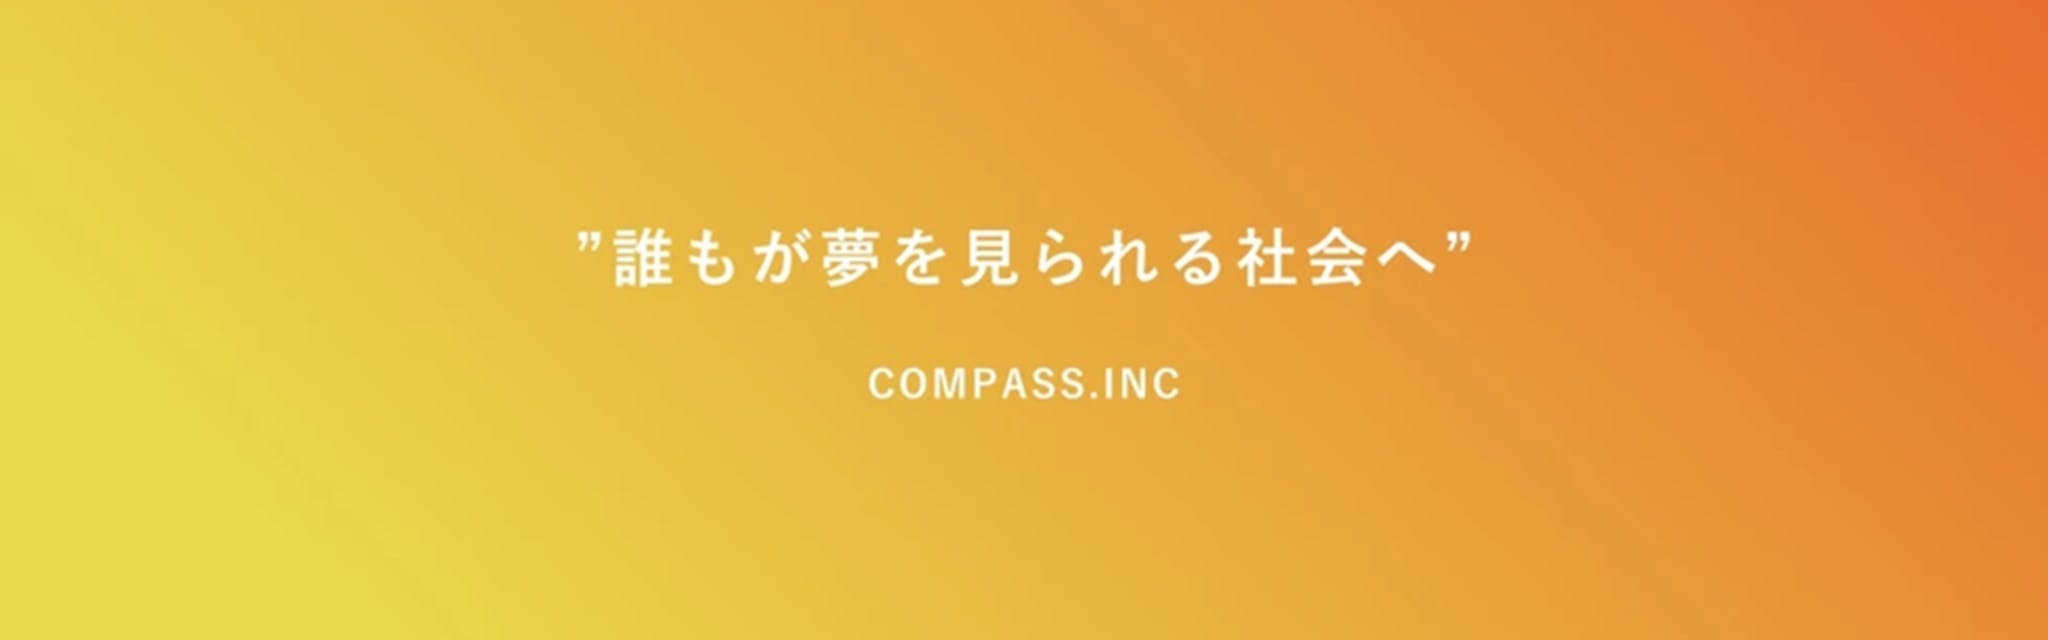 株式会社Compass - カバー画像